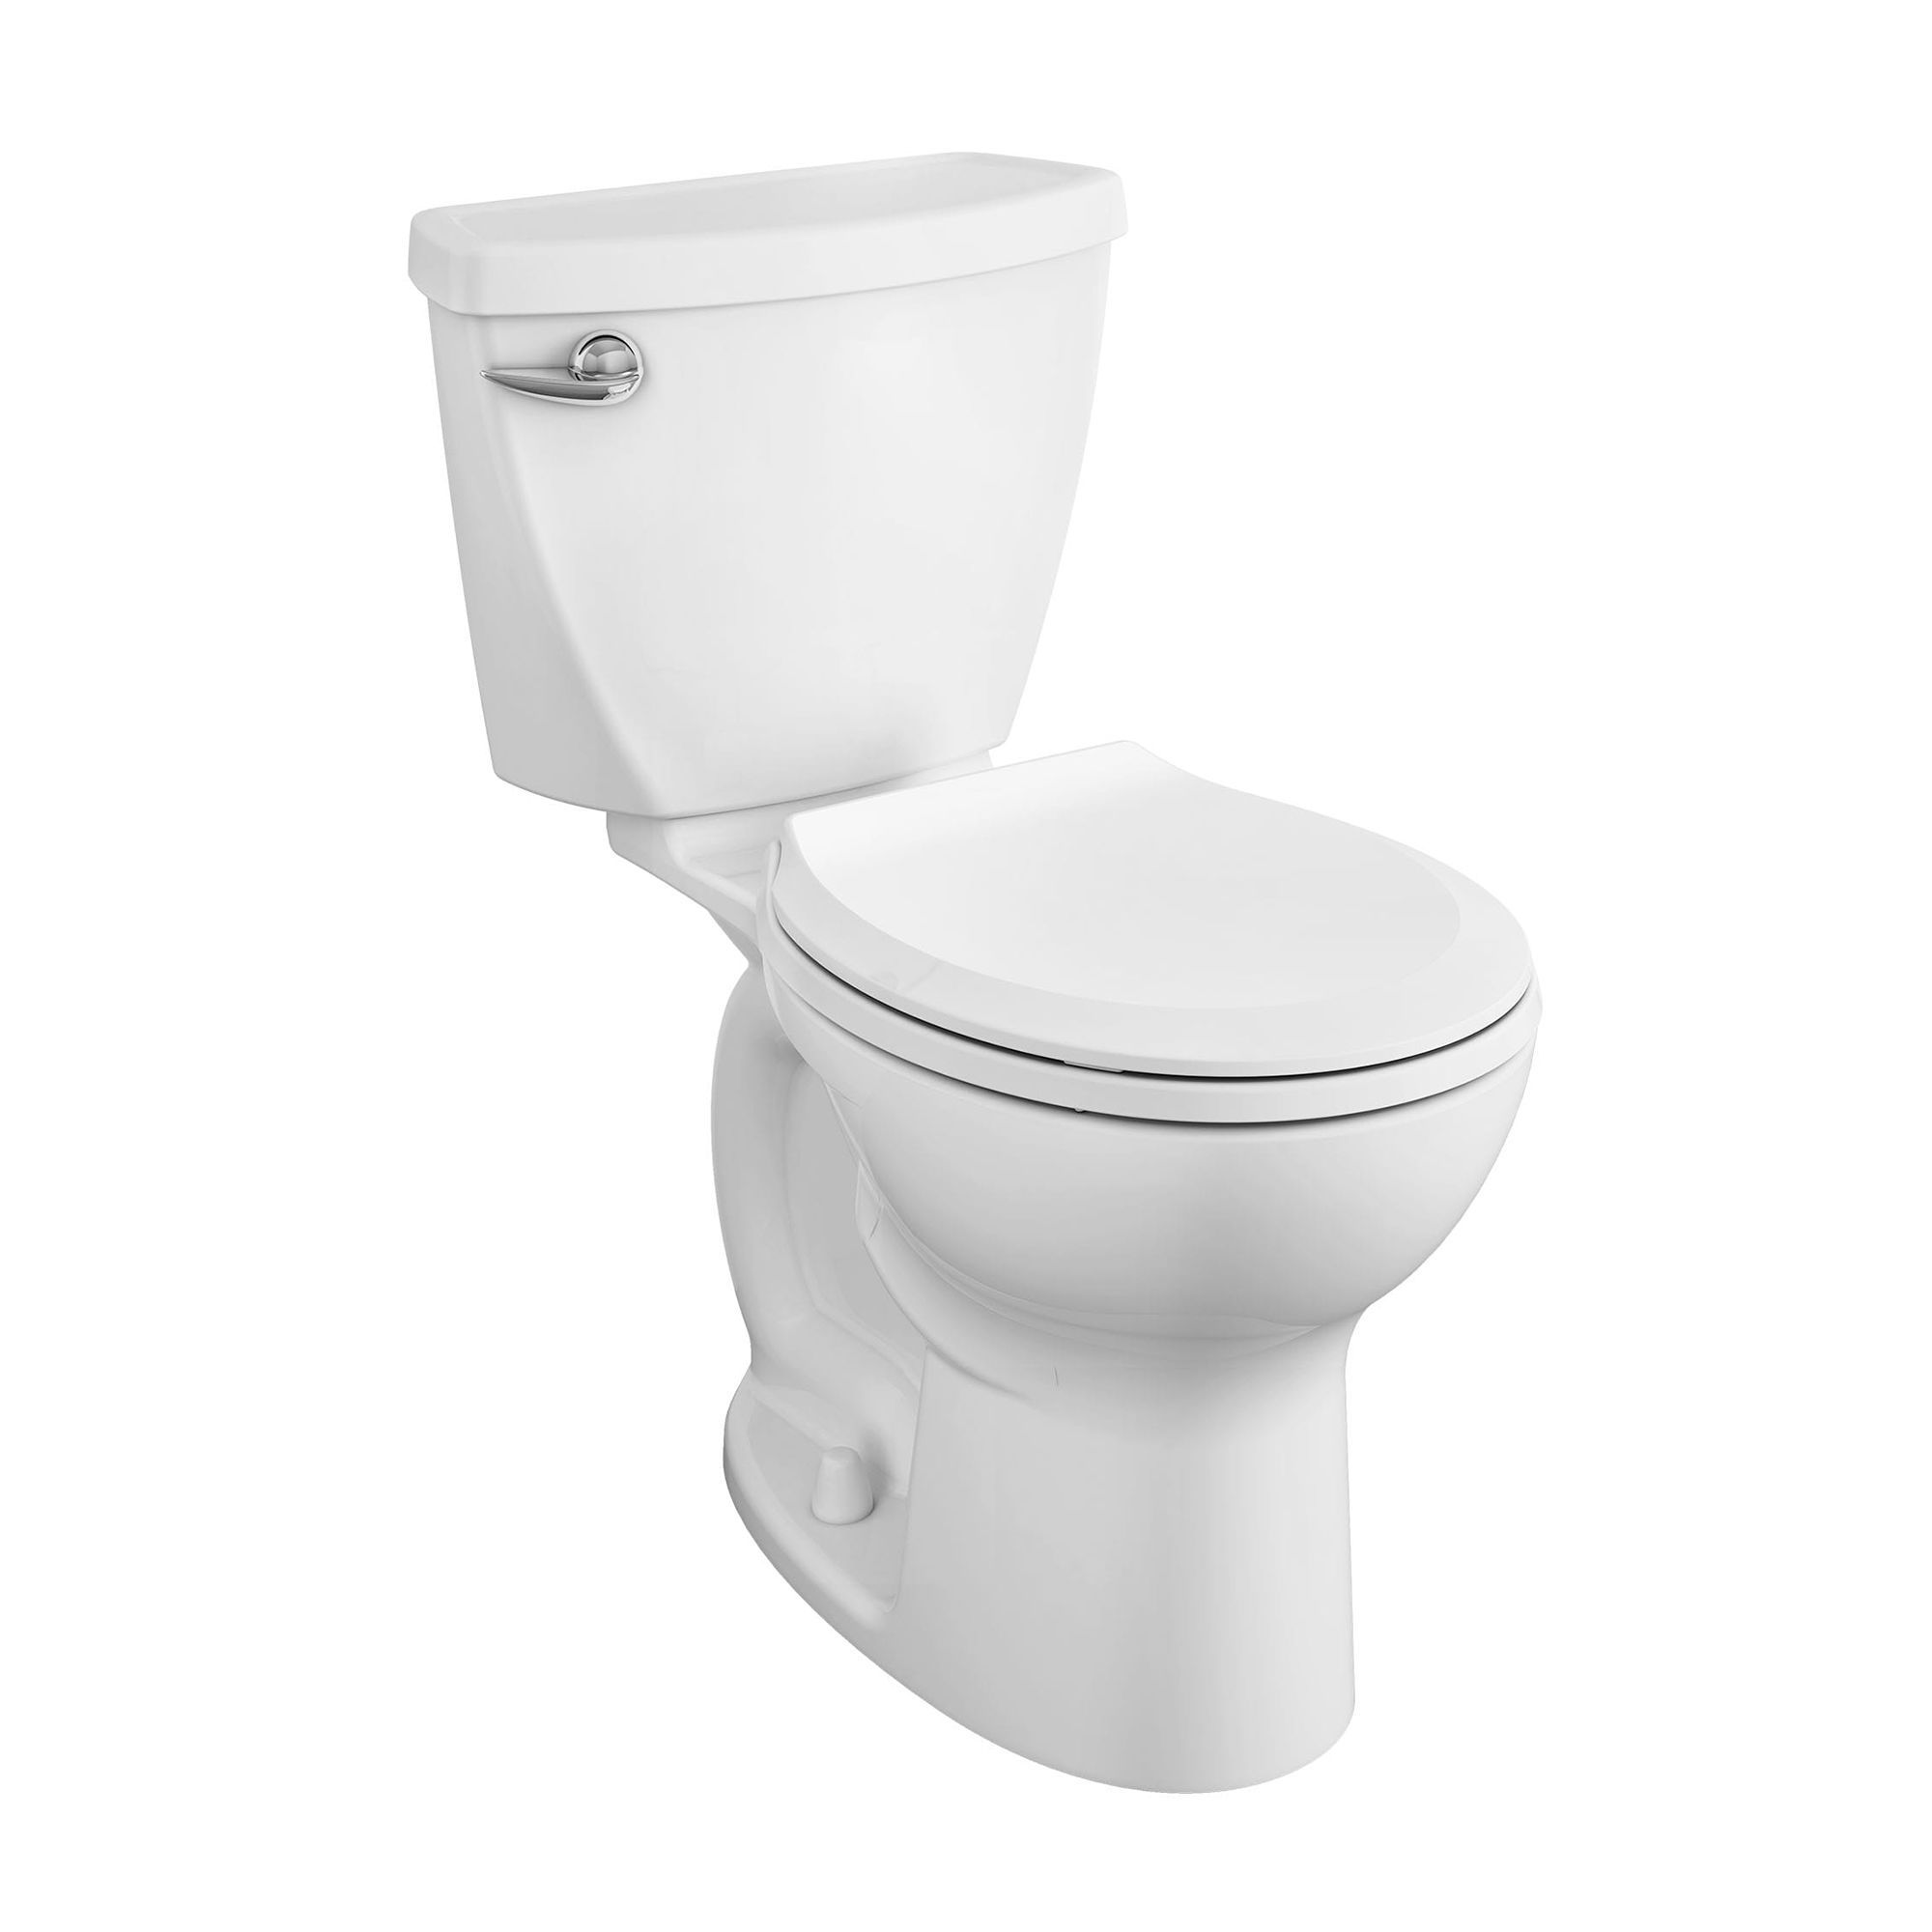 Toilette Cadet 3 FloWise complète en deux pièces, 1,28 gpc/4,8 Lpc, devant  rond, avec siège, 10